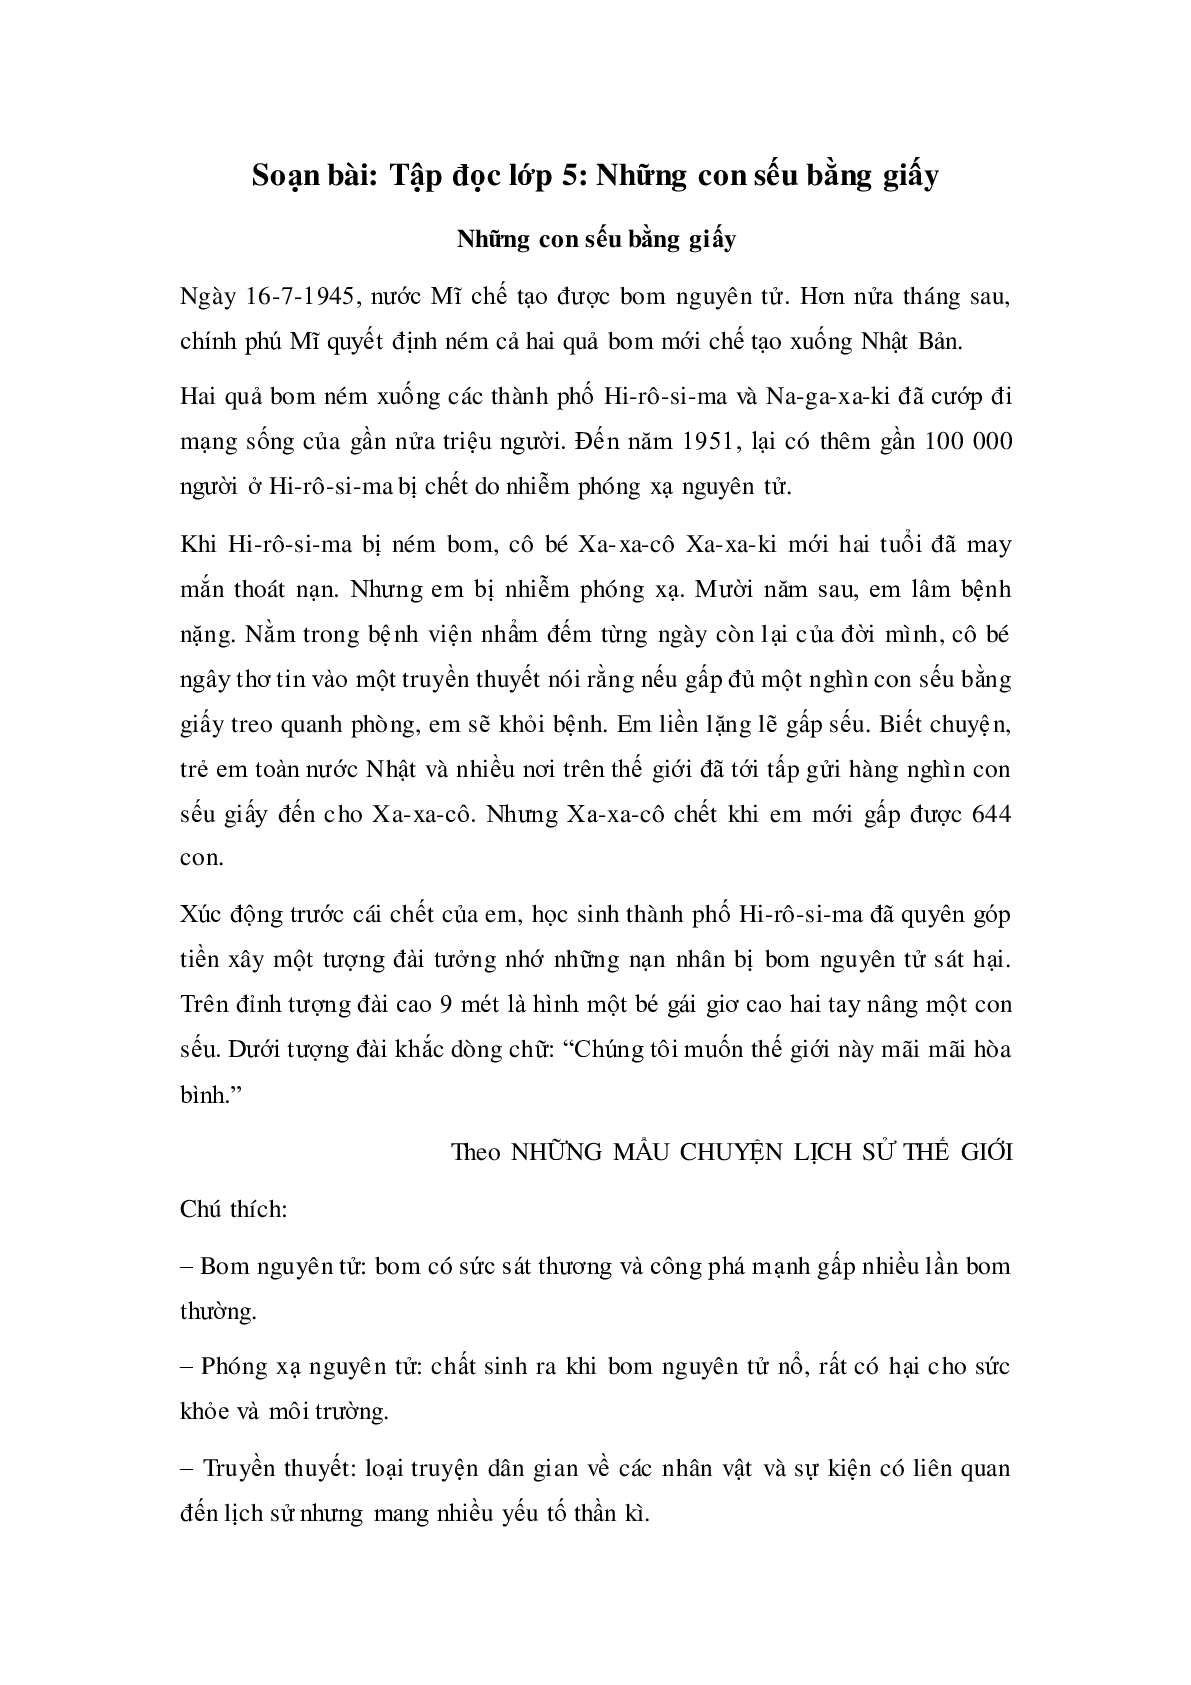 Soạn Tiếng Việt lớp 5: Tập đọc: Những con sếu bằng giấy mới nhất (trang 1)